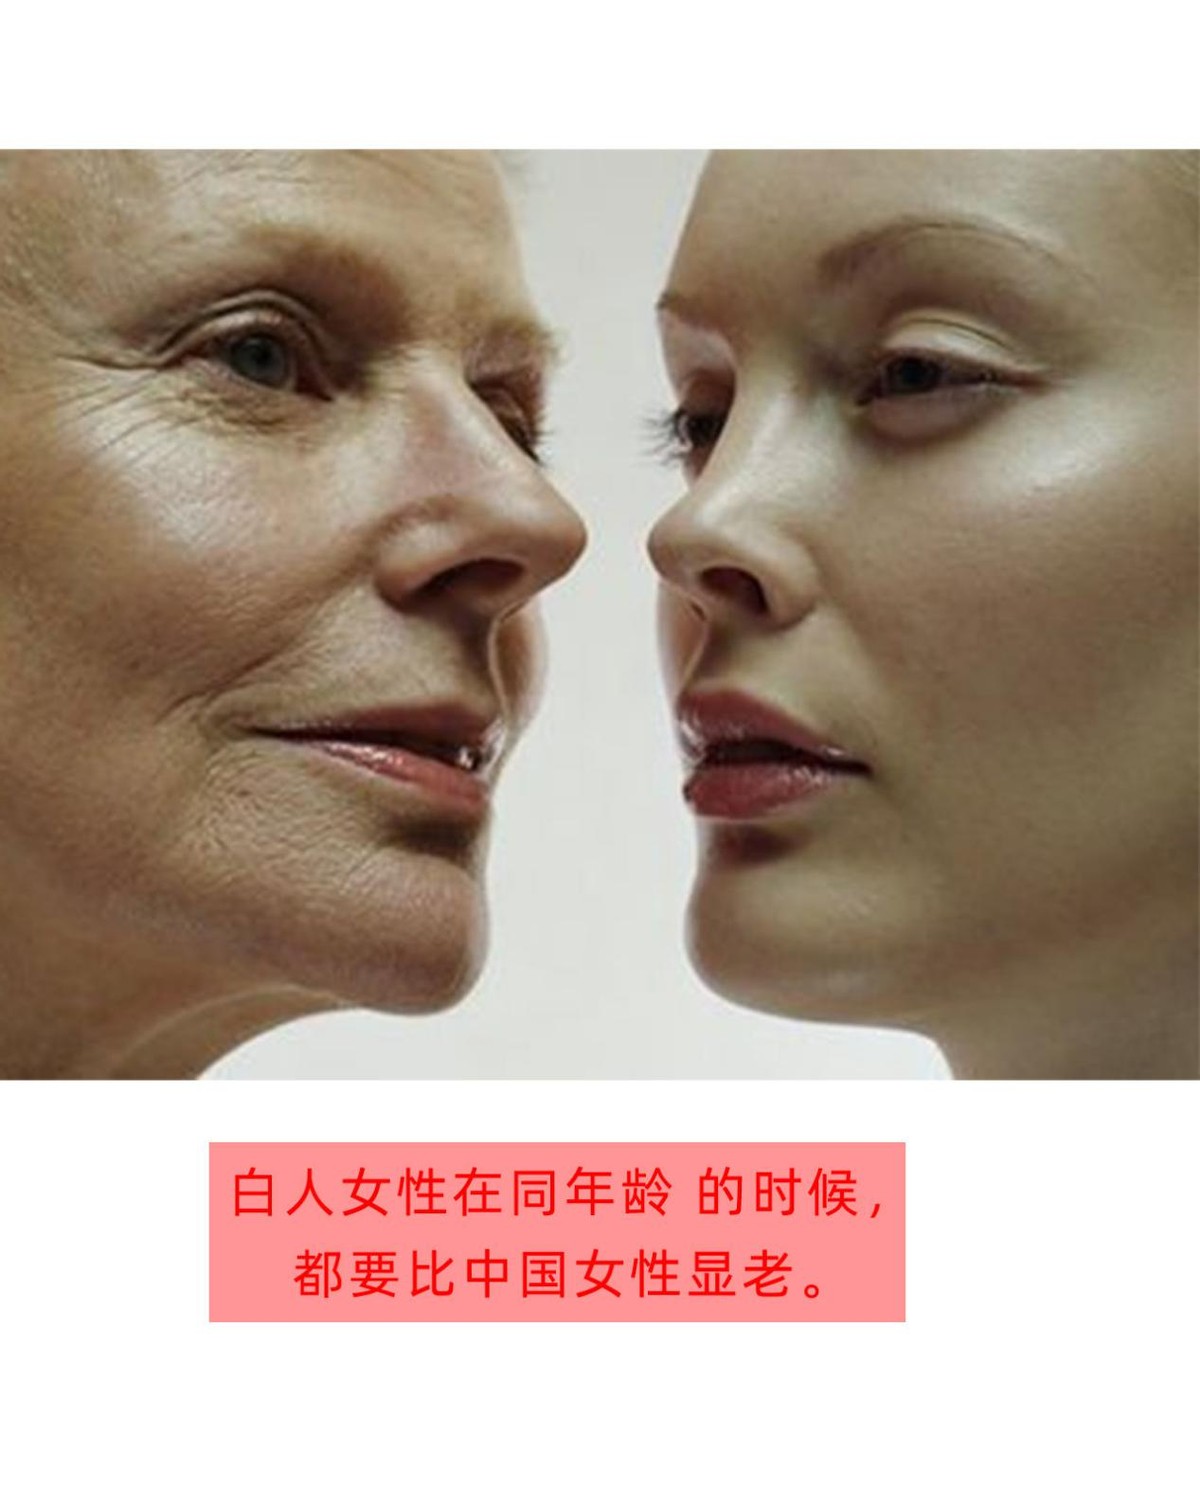 白人女性看起來比中國女性要顯老 是因為不坐月子的原因麼 黎甄 Mdeditor